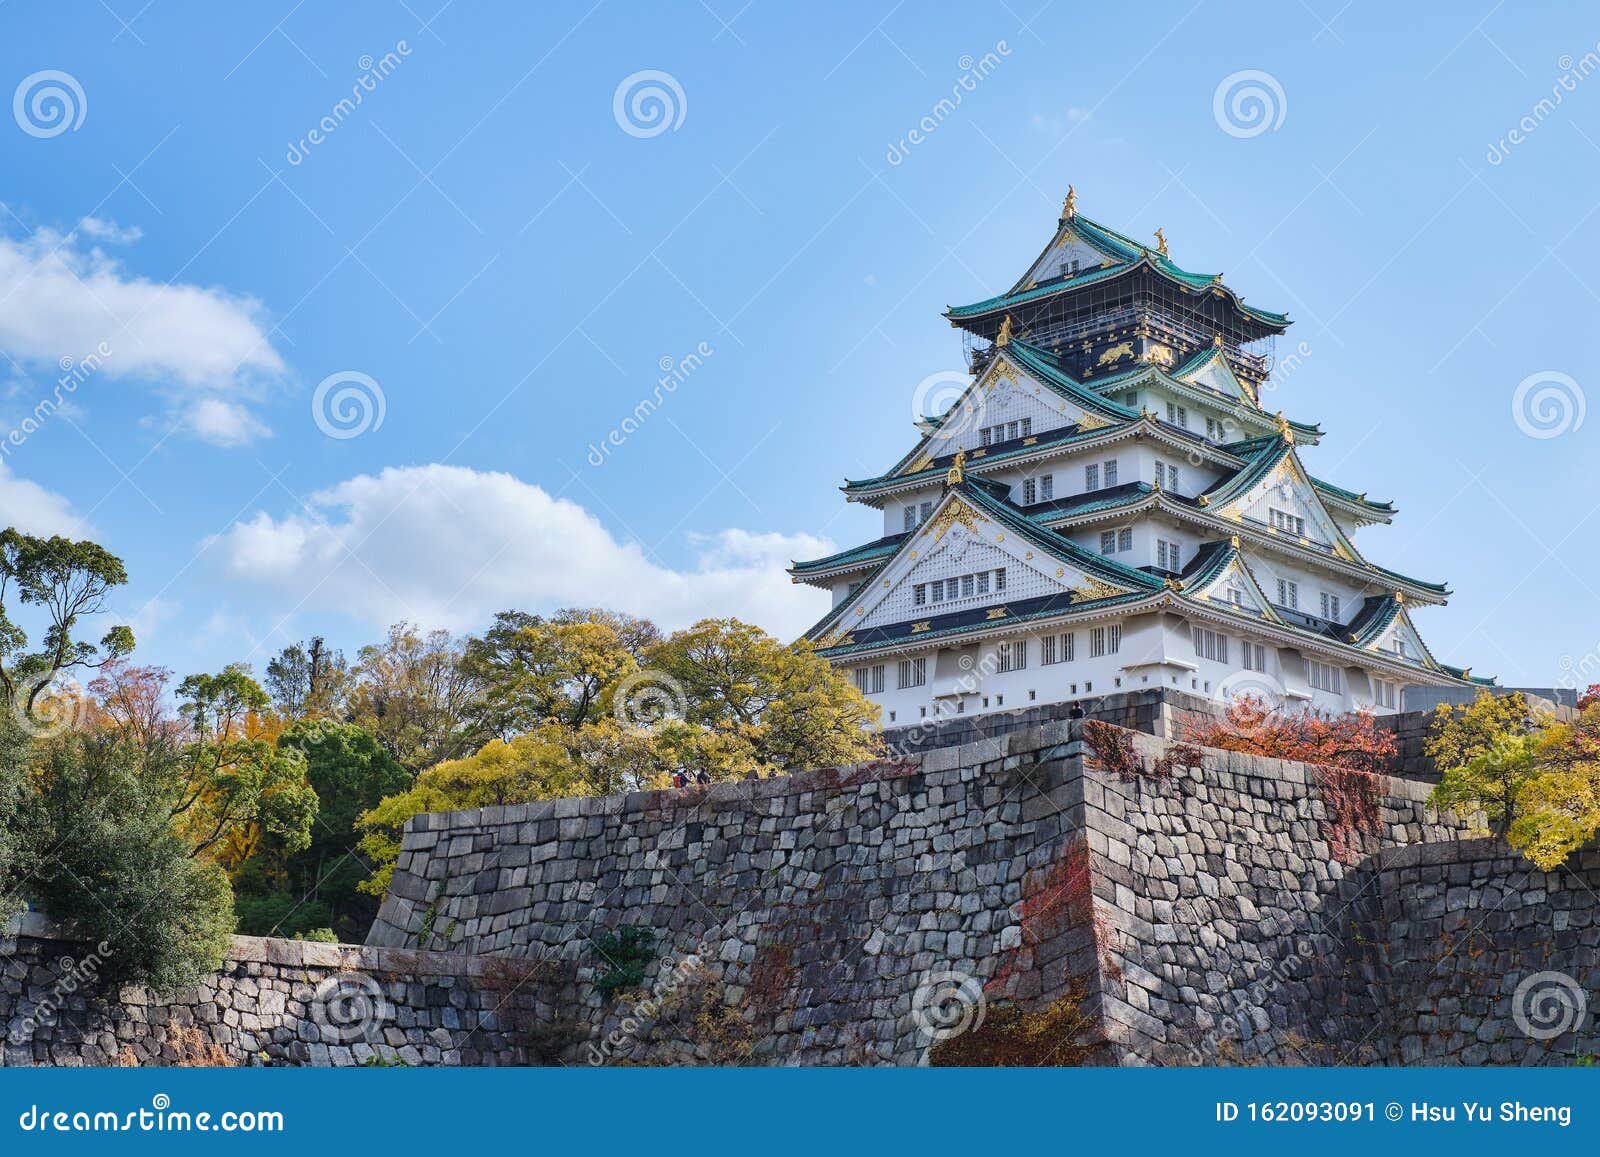 Autumn Scenery Of Osaka Castle Park Stock Image Image Of Kansai Park 162093091